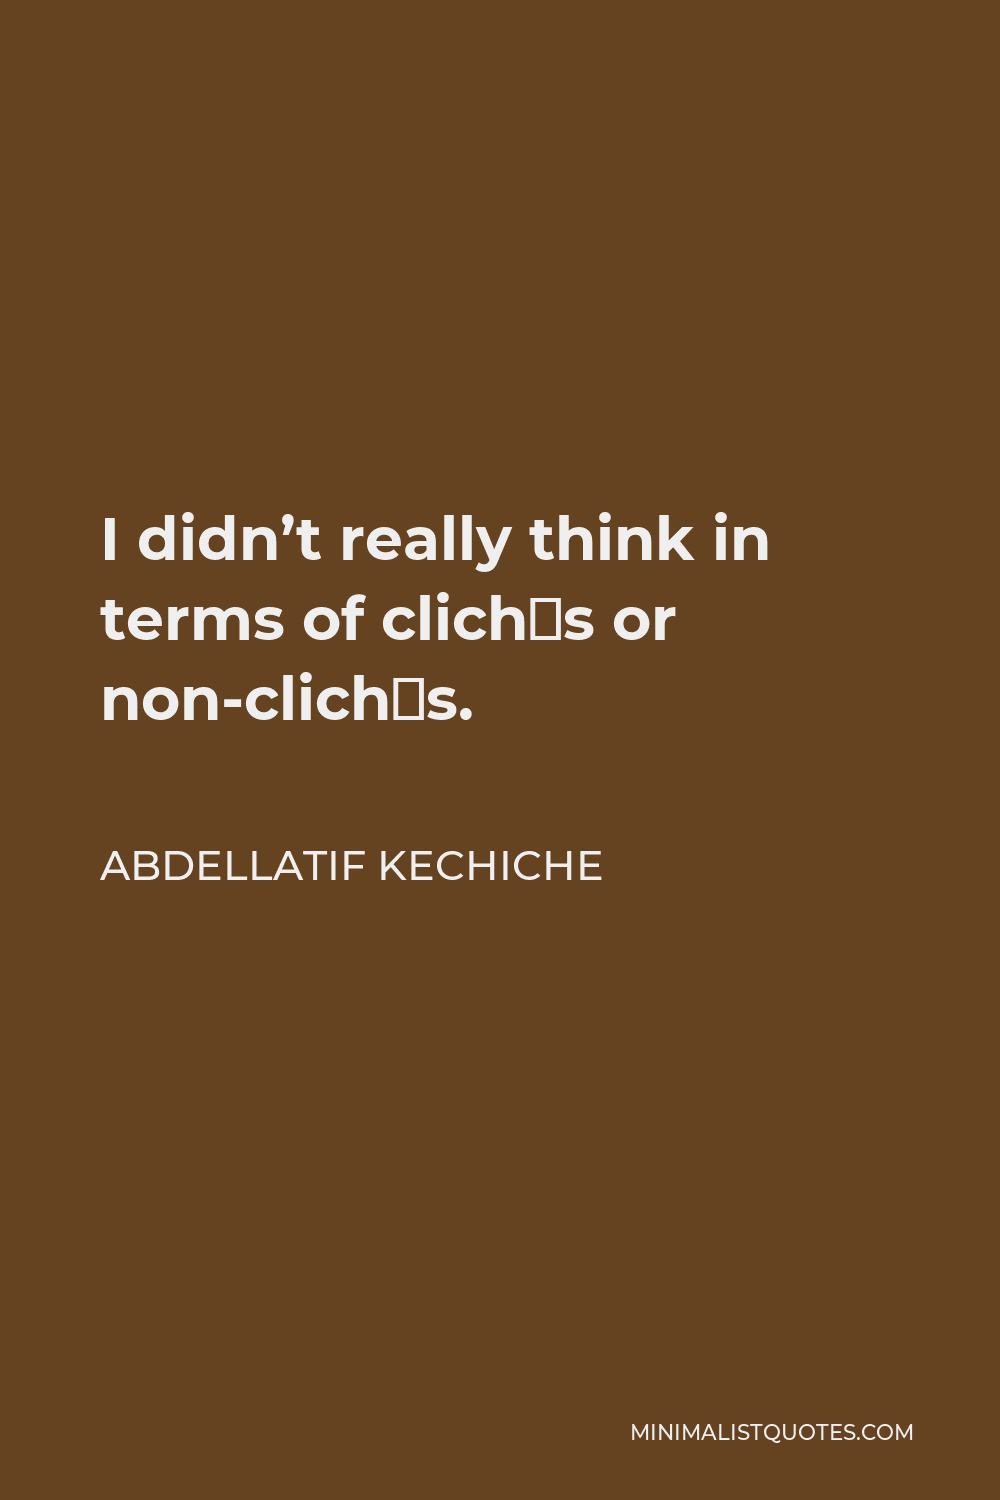 Abdellatif Kechiche Quote - I didn’t really think in terms of clichés or non-clichés.